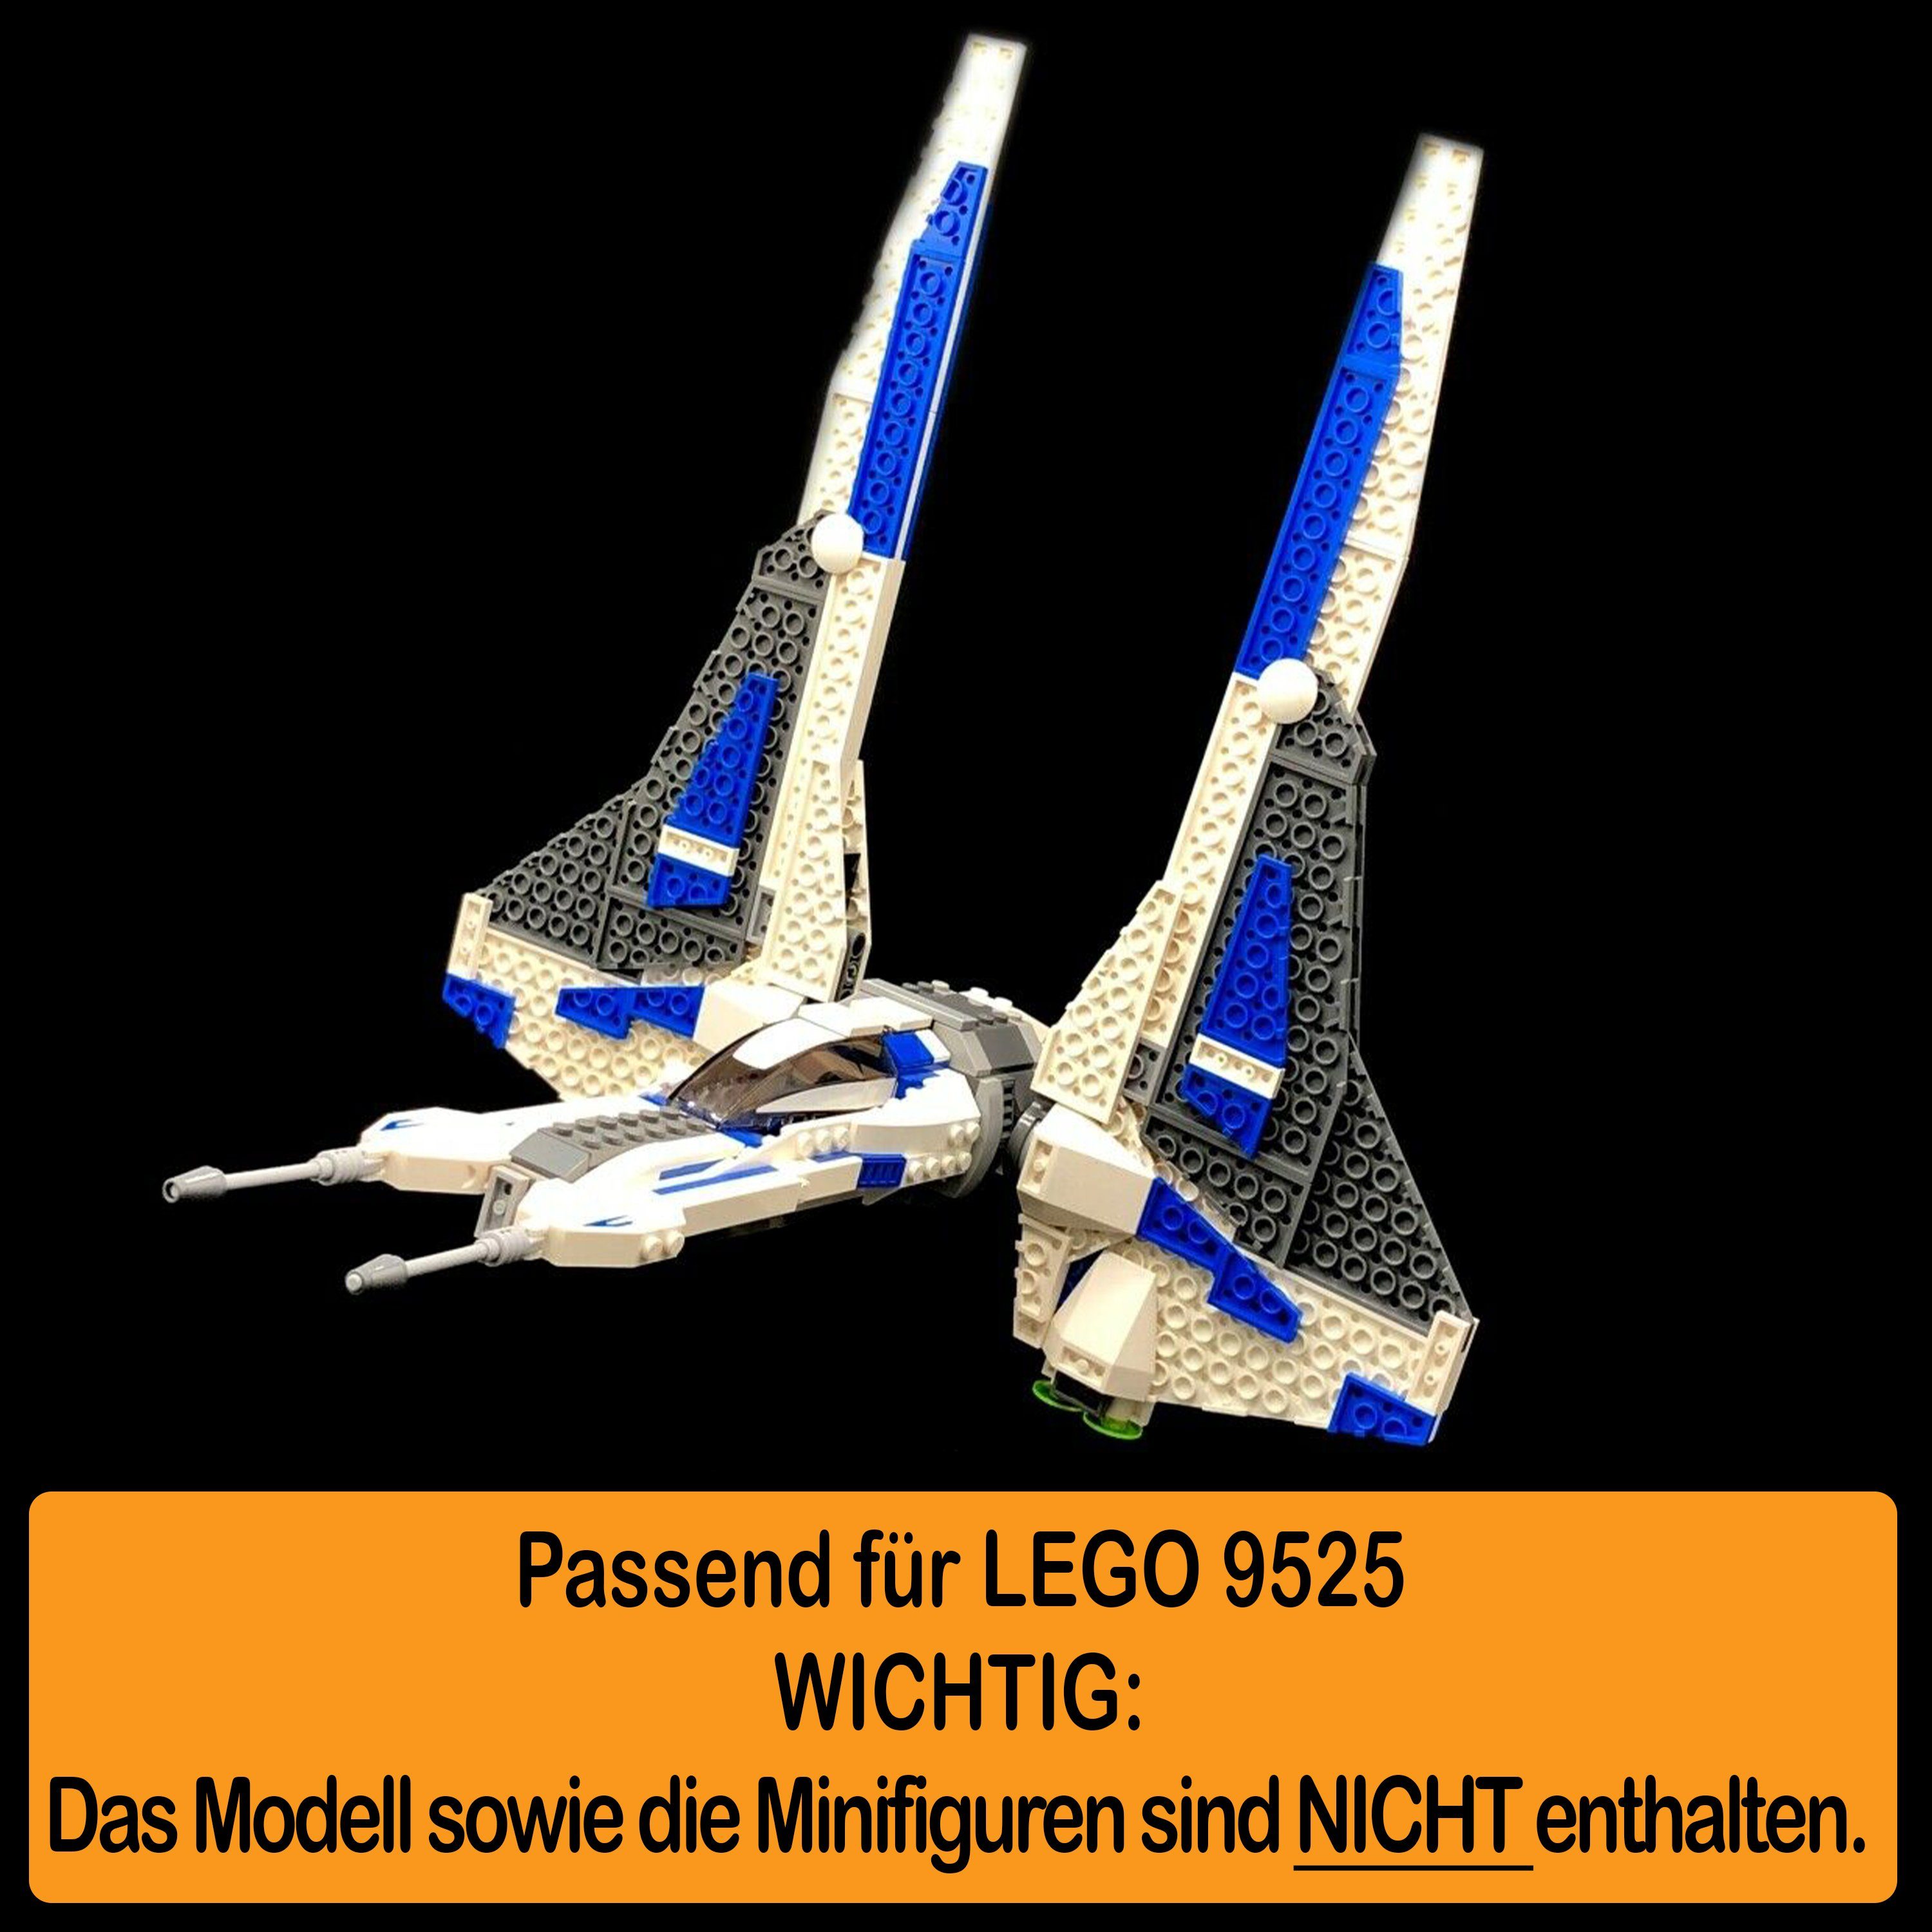 Display 9525 LEGO Fighter Positionen zum 100% Germany Stand Pre (verschiedene Vizsla's zusammenbauen), Winkel AREA17 und in für einstellbar, Standfuß selbst Made Mandalorian Acryl